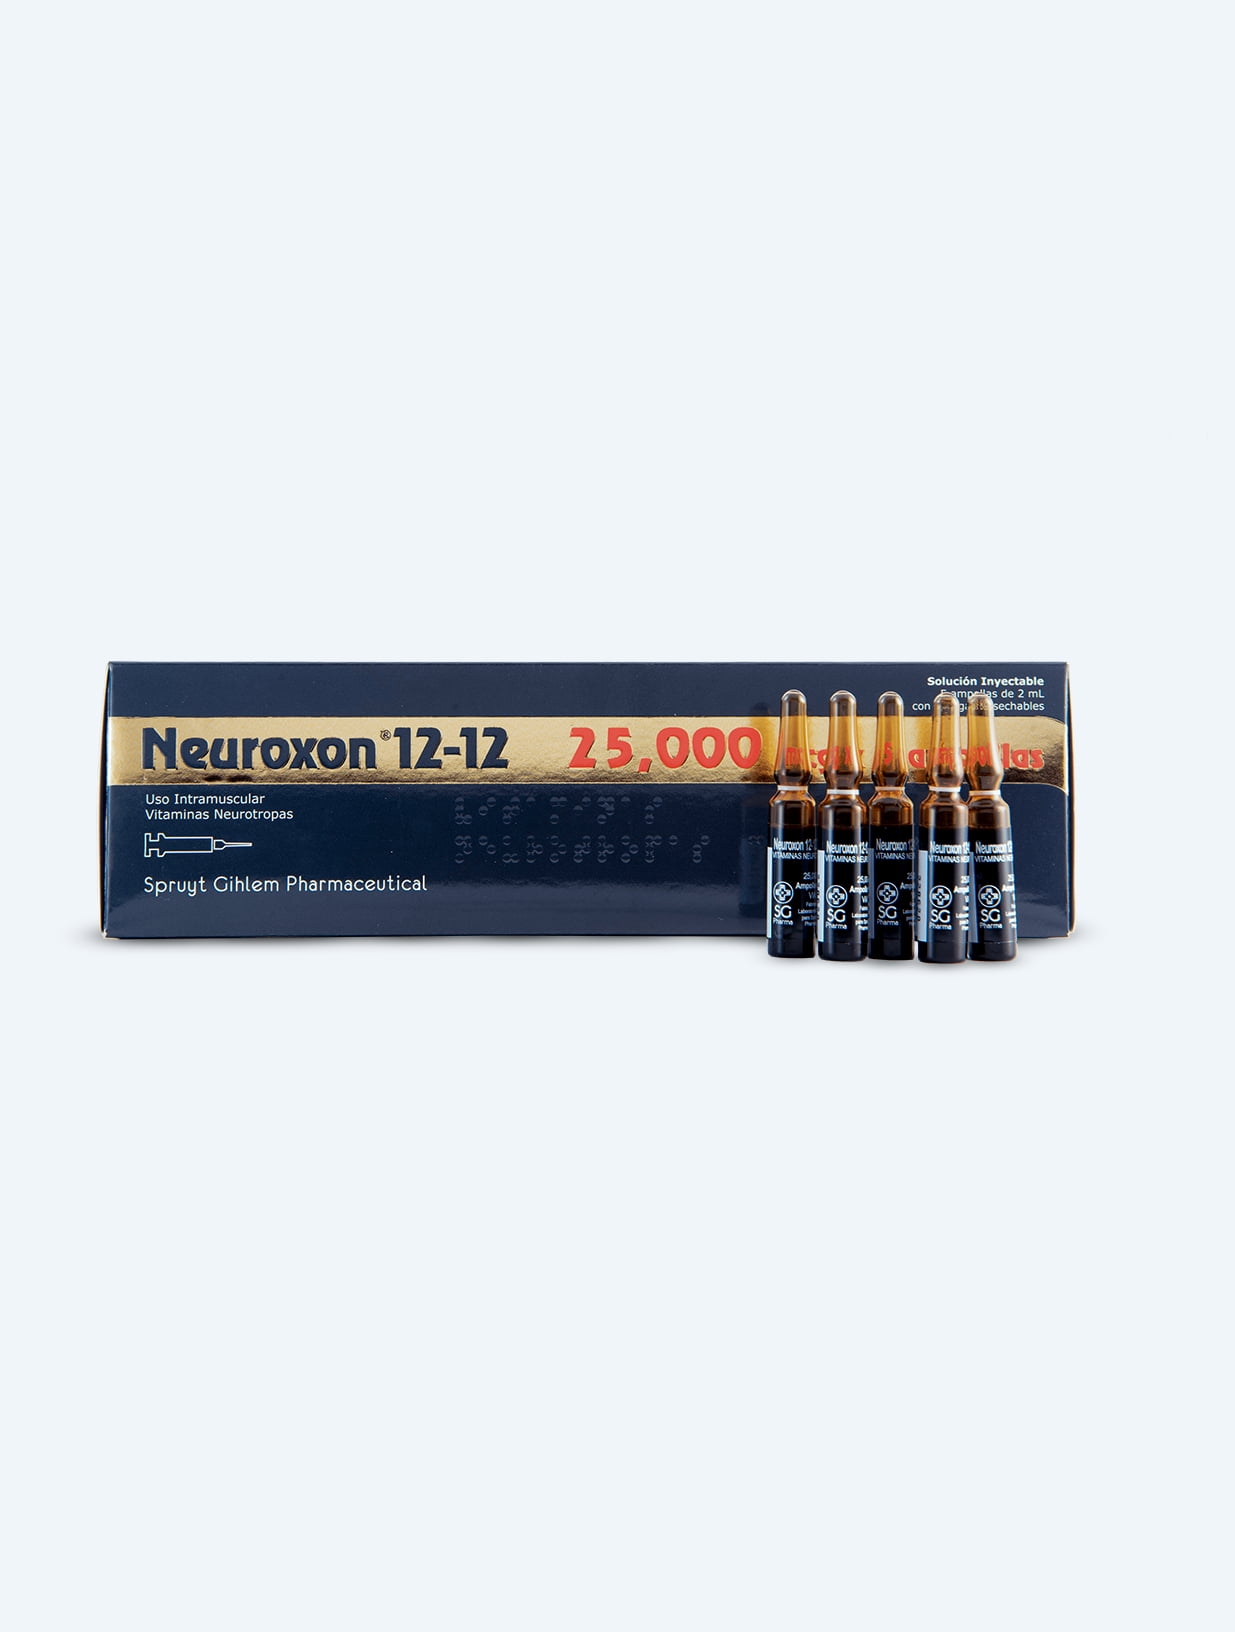 Imágen de Neuroxon® 12·12 25,000mg x 5 ampollas